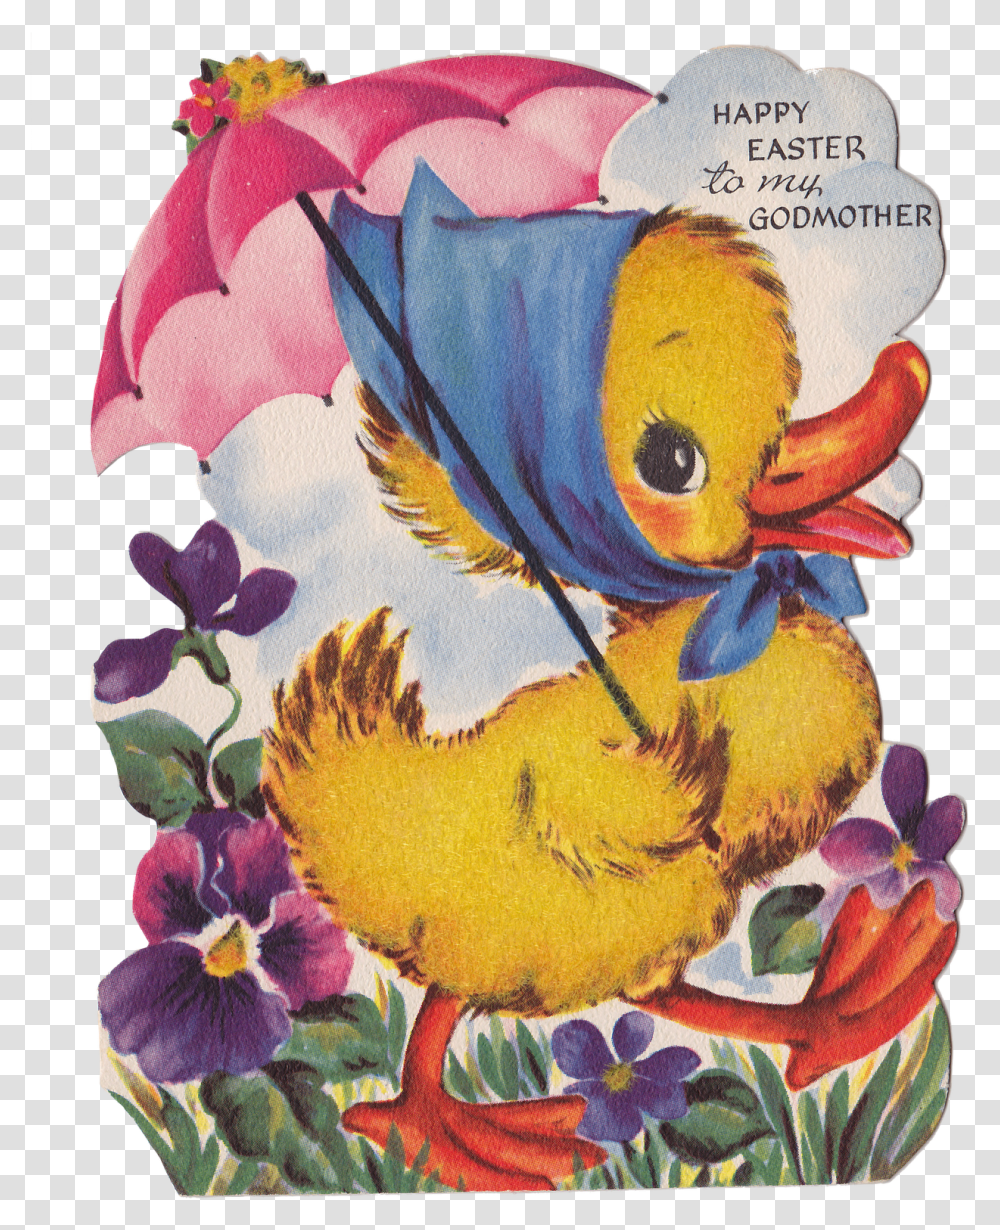 Vintage Easter Image Background Happy Easter To My Godmother, Floral Design, Pattern Transparent Png